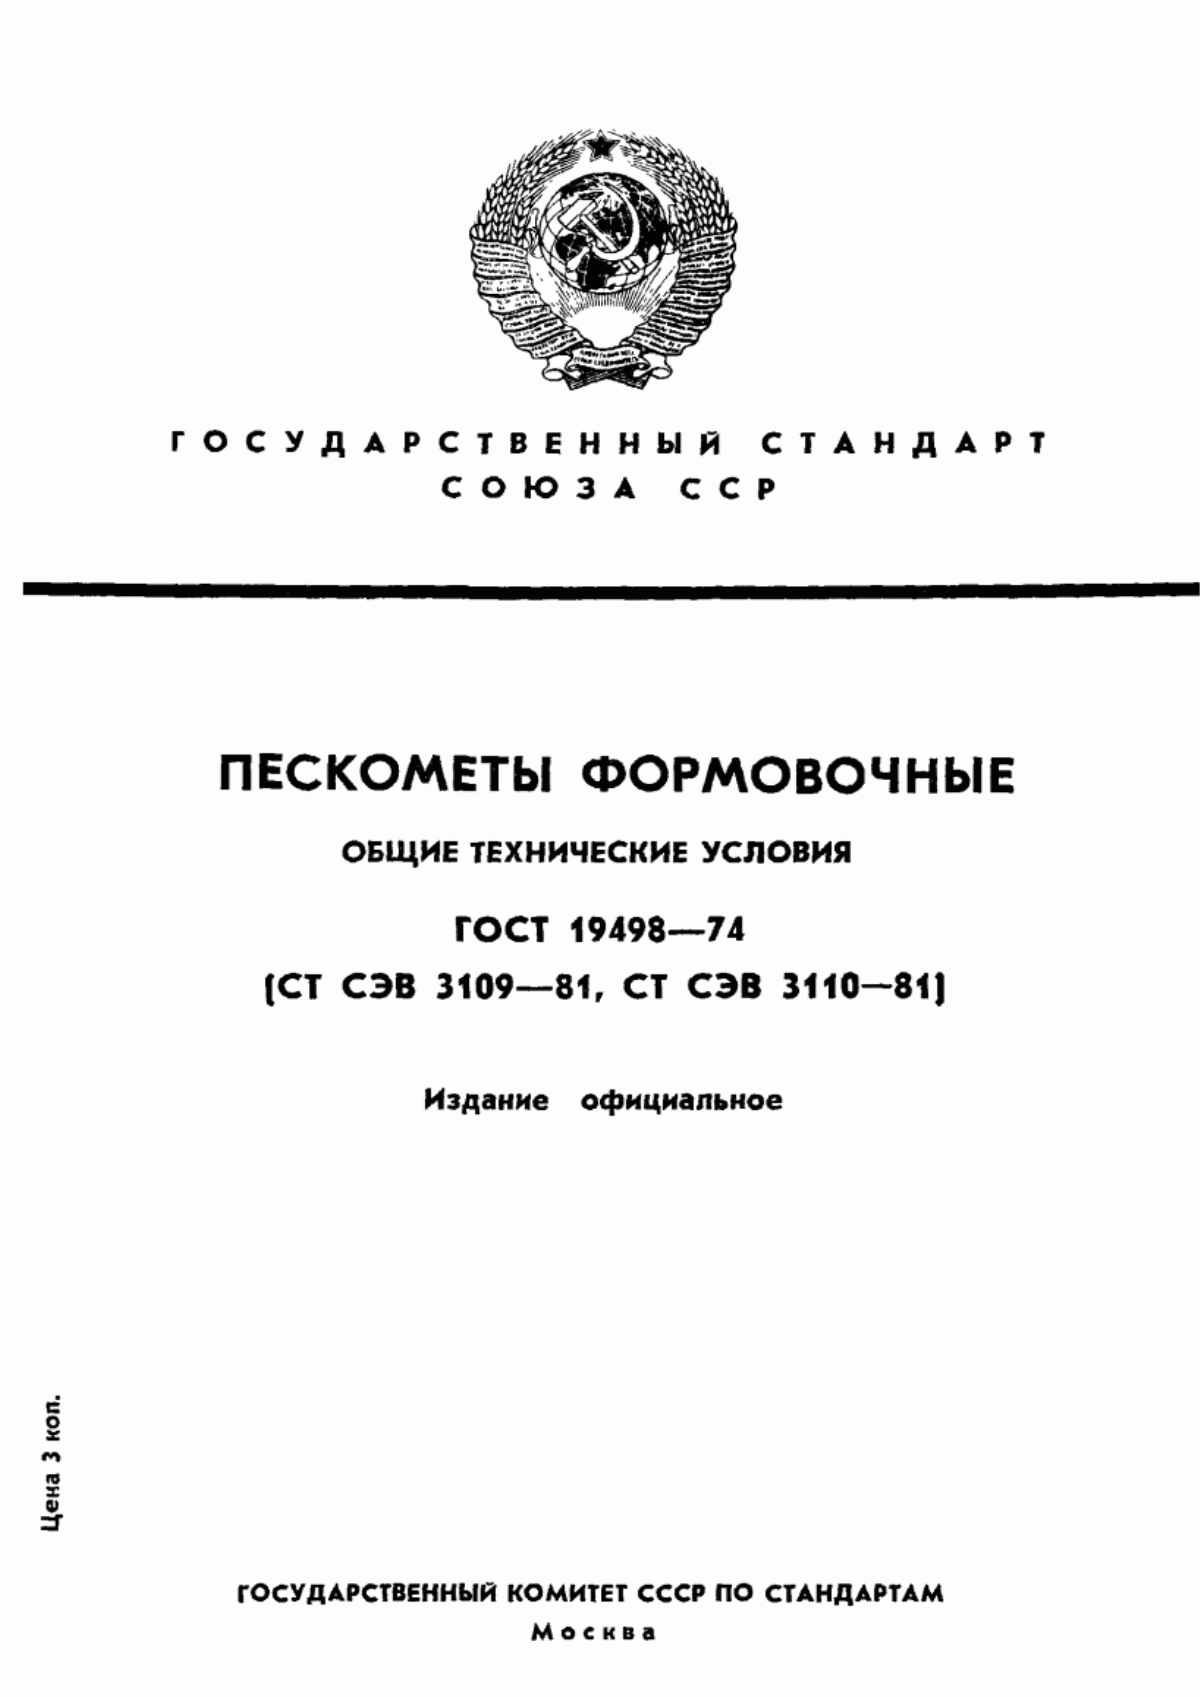 ГОСТ 19498-74 Пескометы формовочные. Общие технические условия